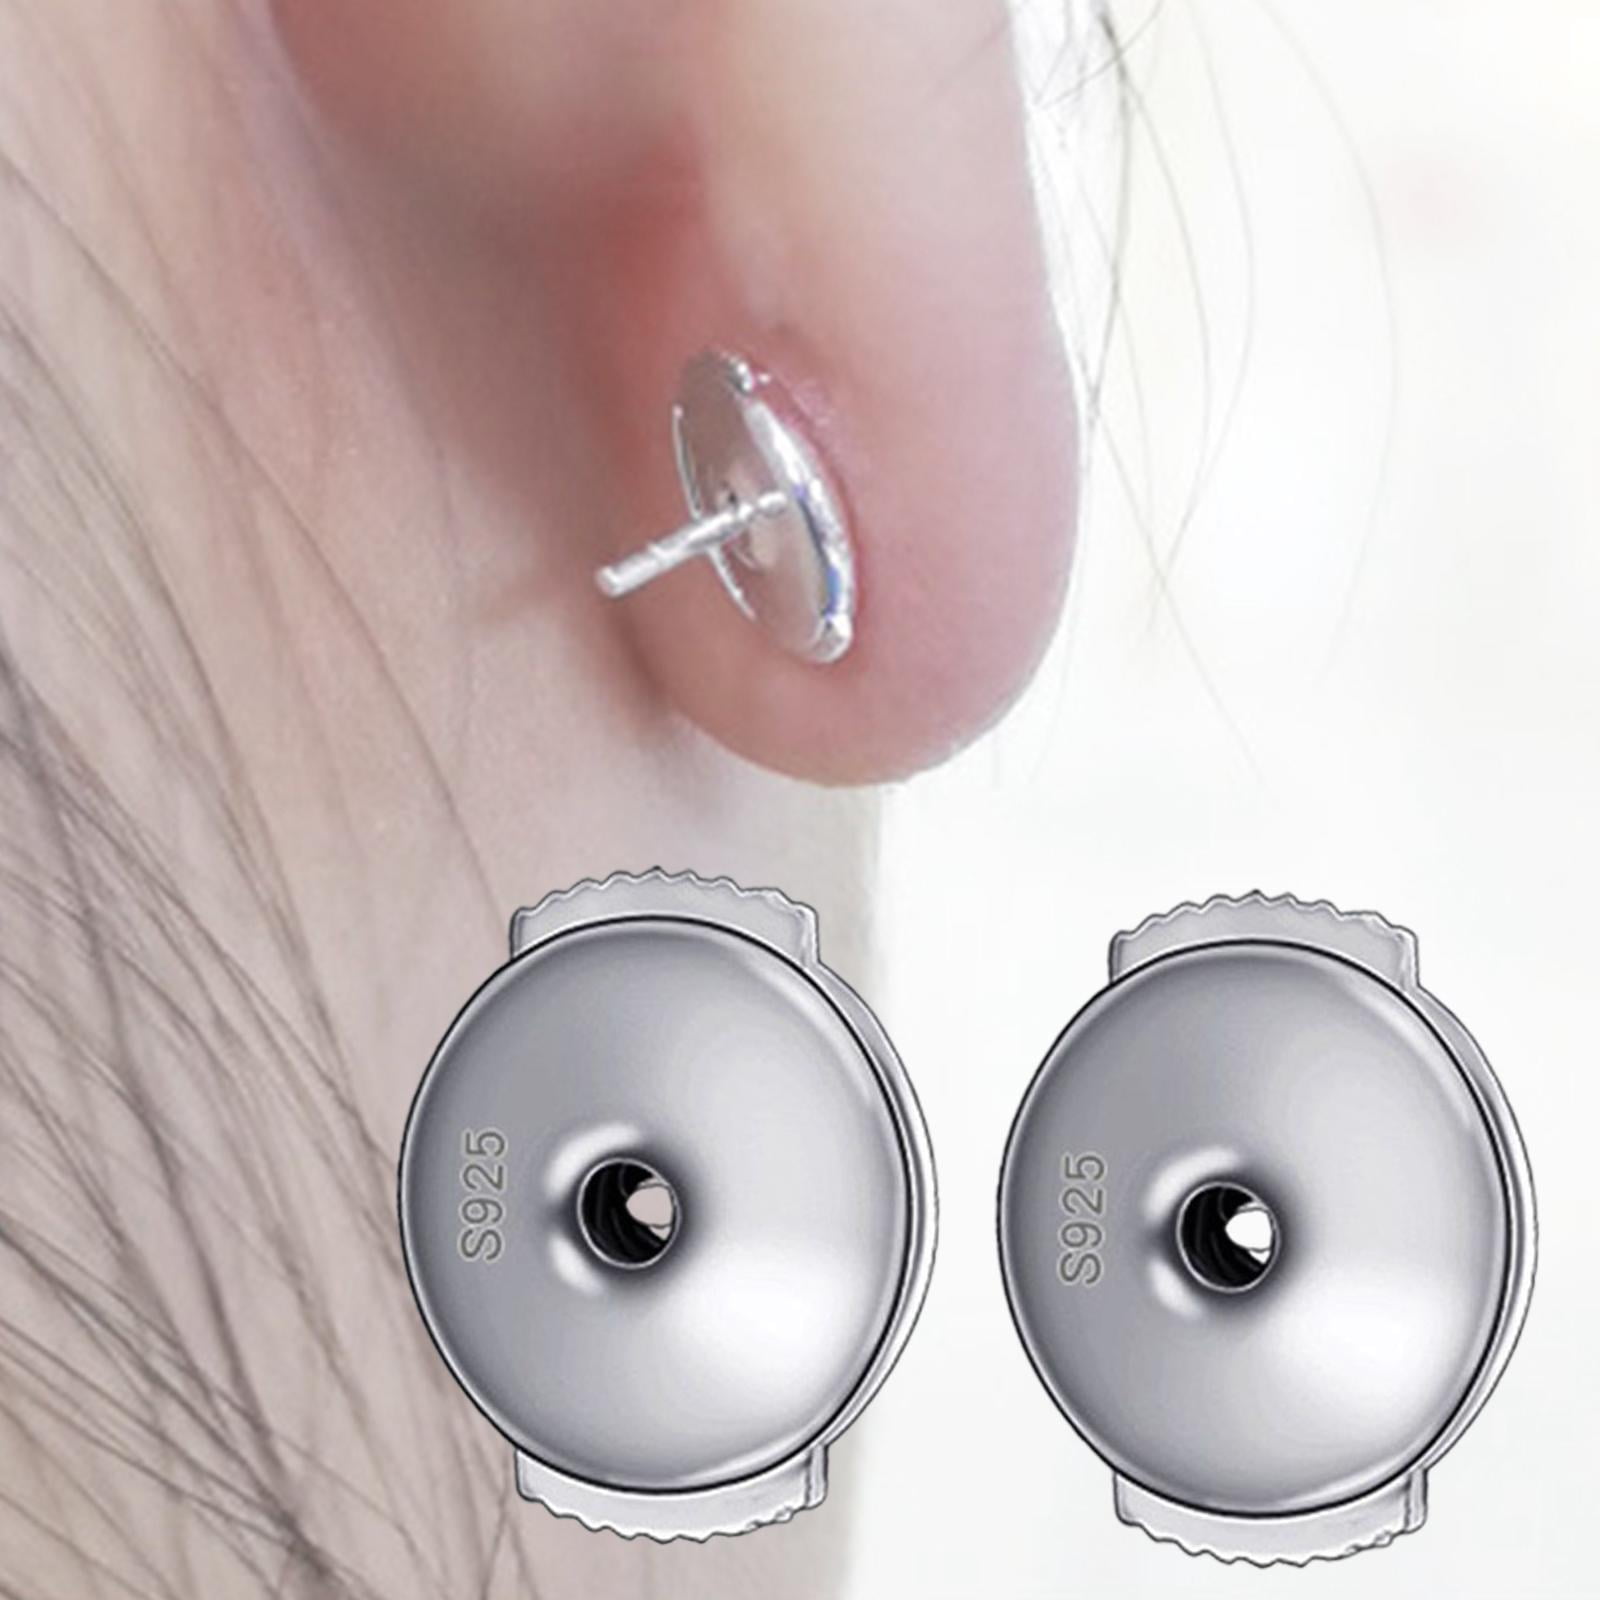 Earring Backs Stopper Locking Jewelry Findings Secure Stoppers Earring  Backs 6mm Golden